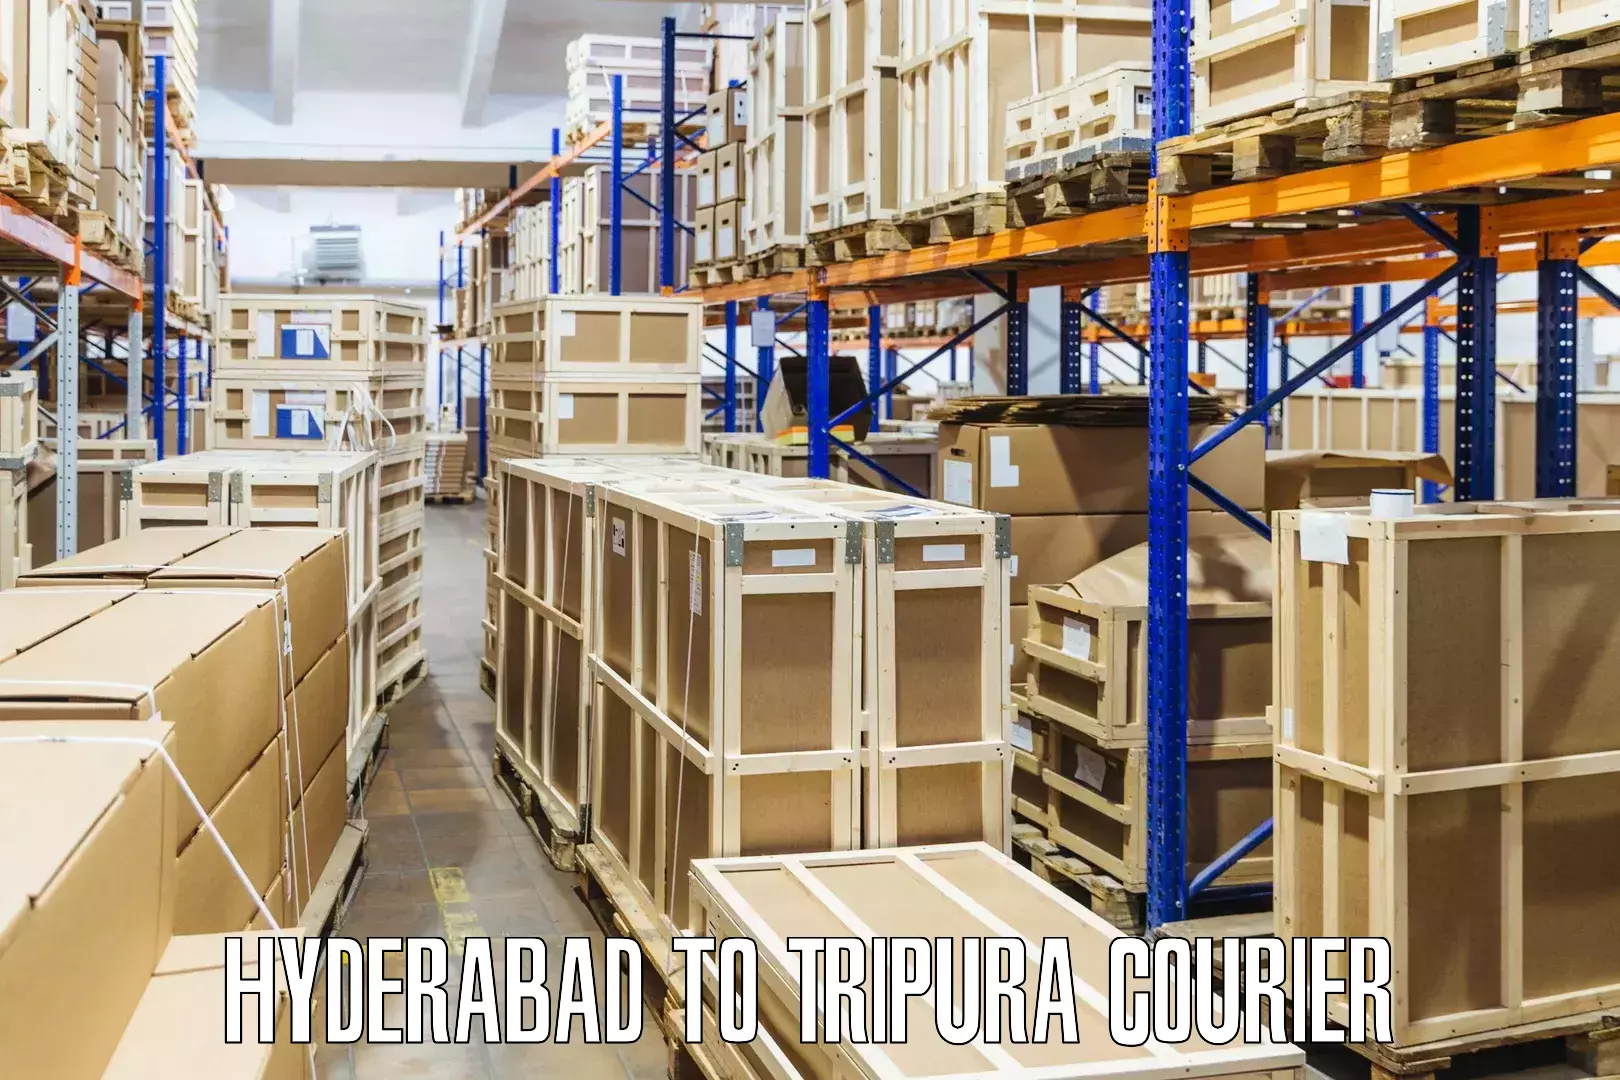 Global delivery options Hyderabad to IIIT Agartala